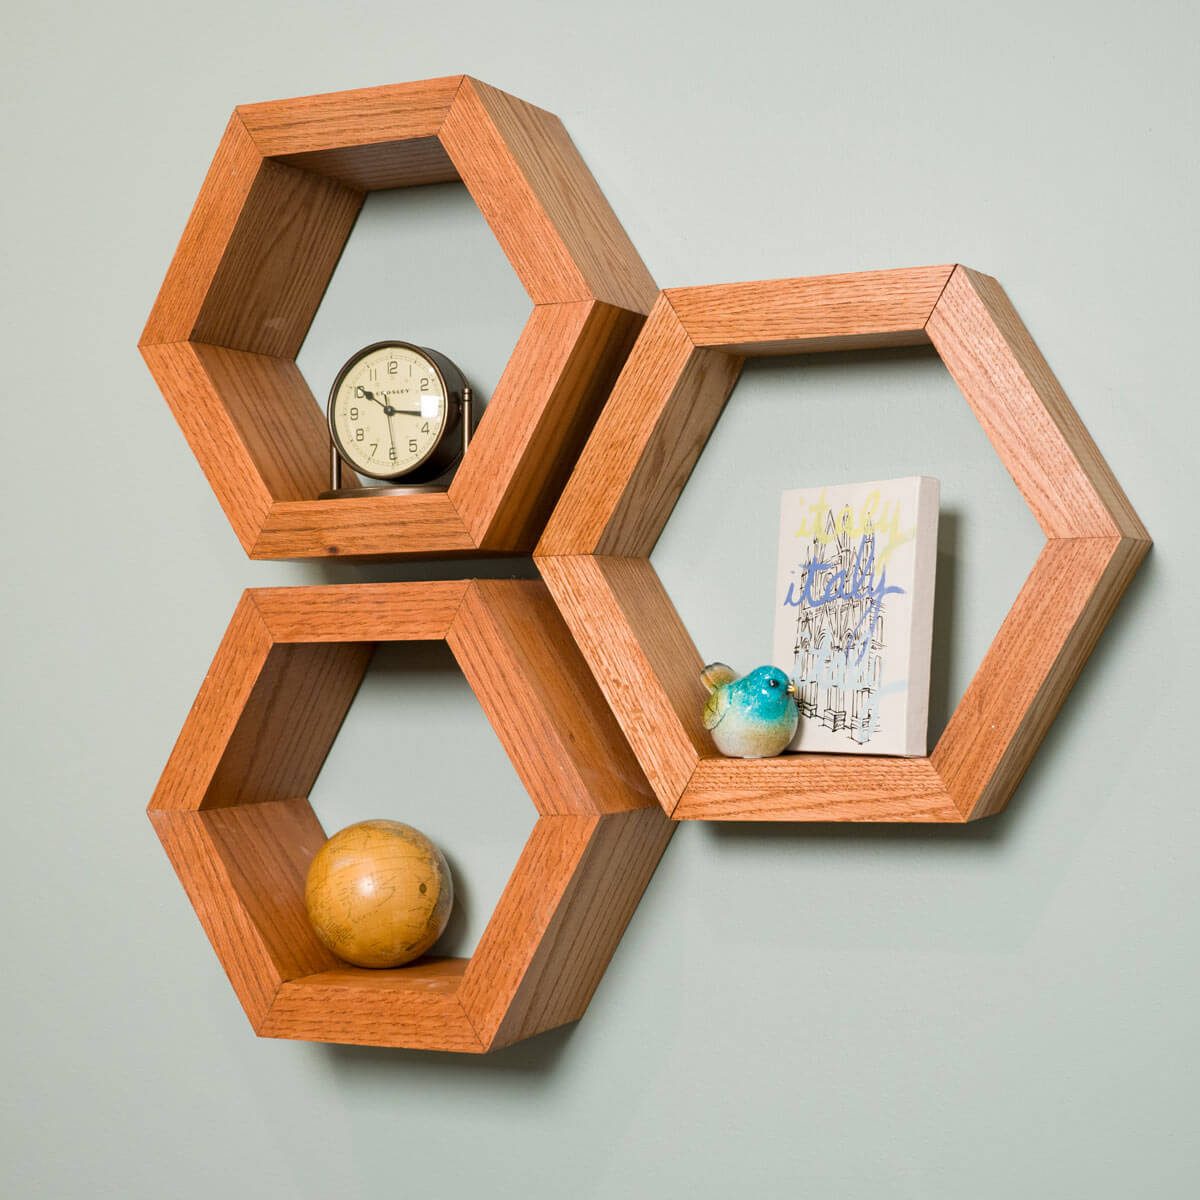 Hexagon Shelves Lead